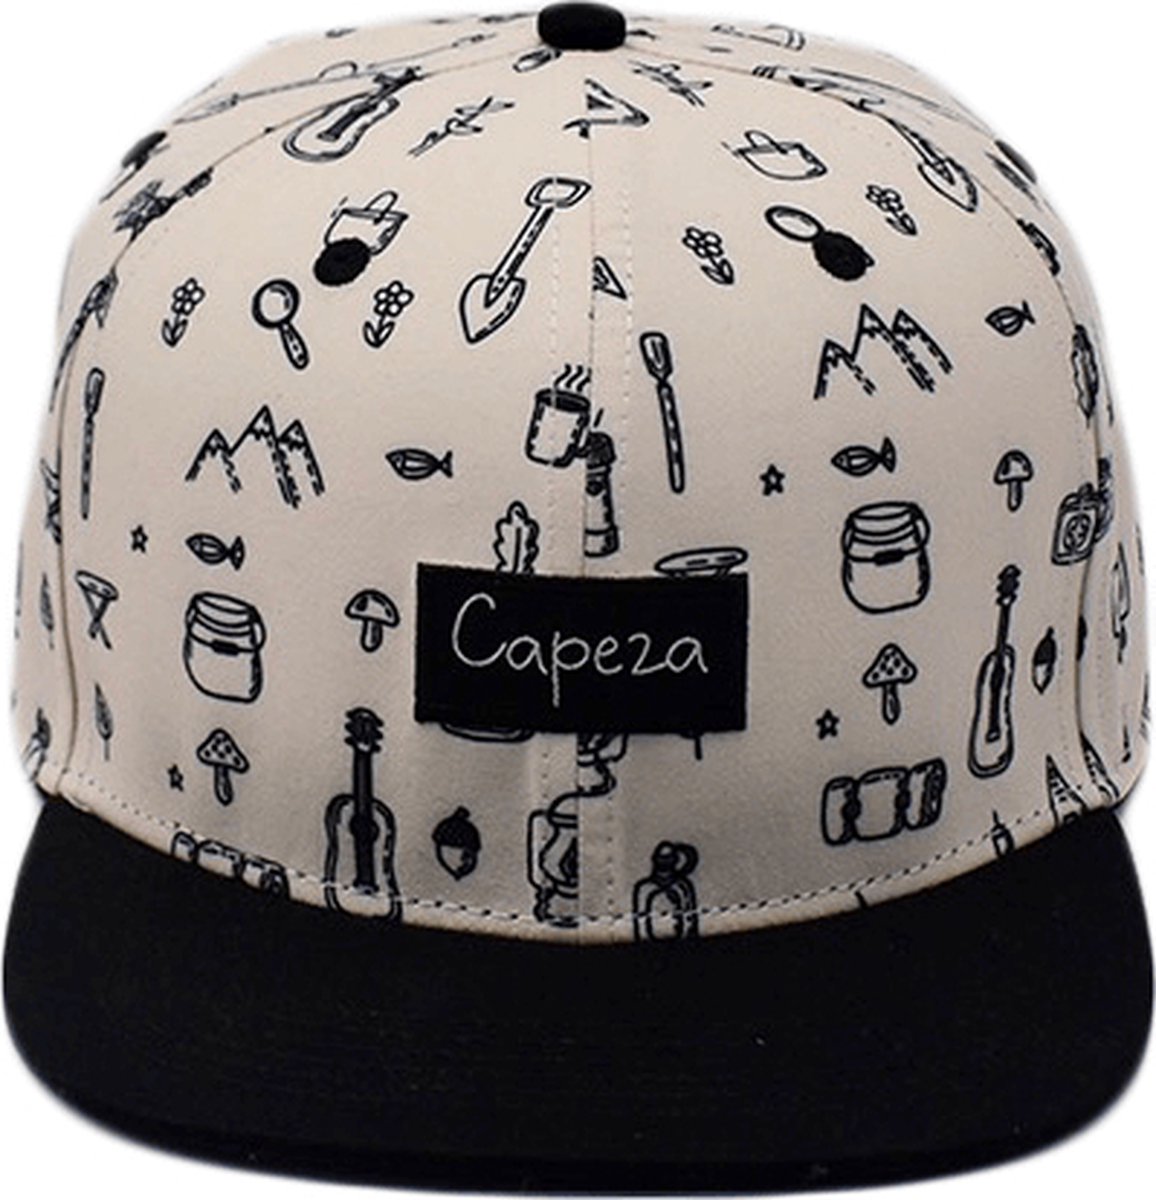 Capeza - Andréa - Kind 6 jaar en hoger - Snapback kind - Kinderpet - Zomerpet - Pet voor kinderen - snapback cap